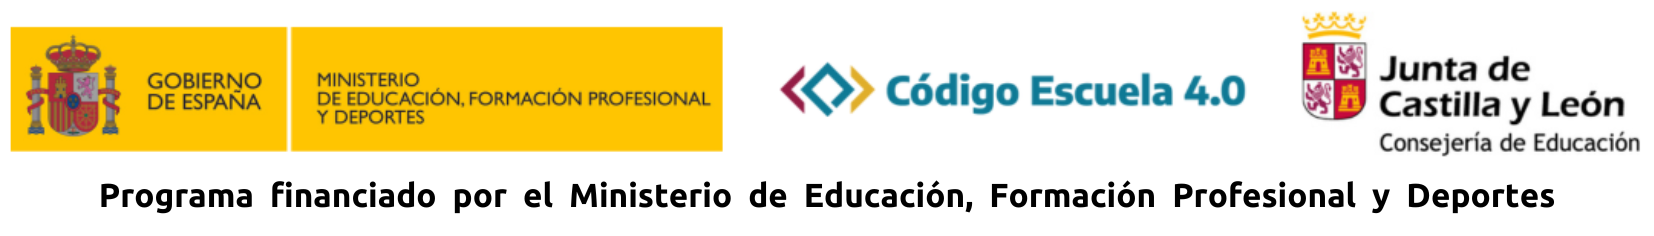 3 Logos_Escuela 4.0 con frase